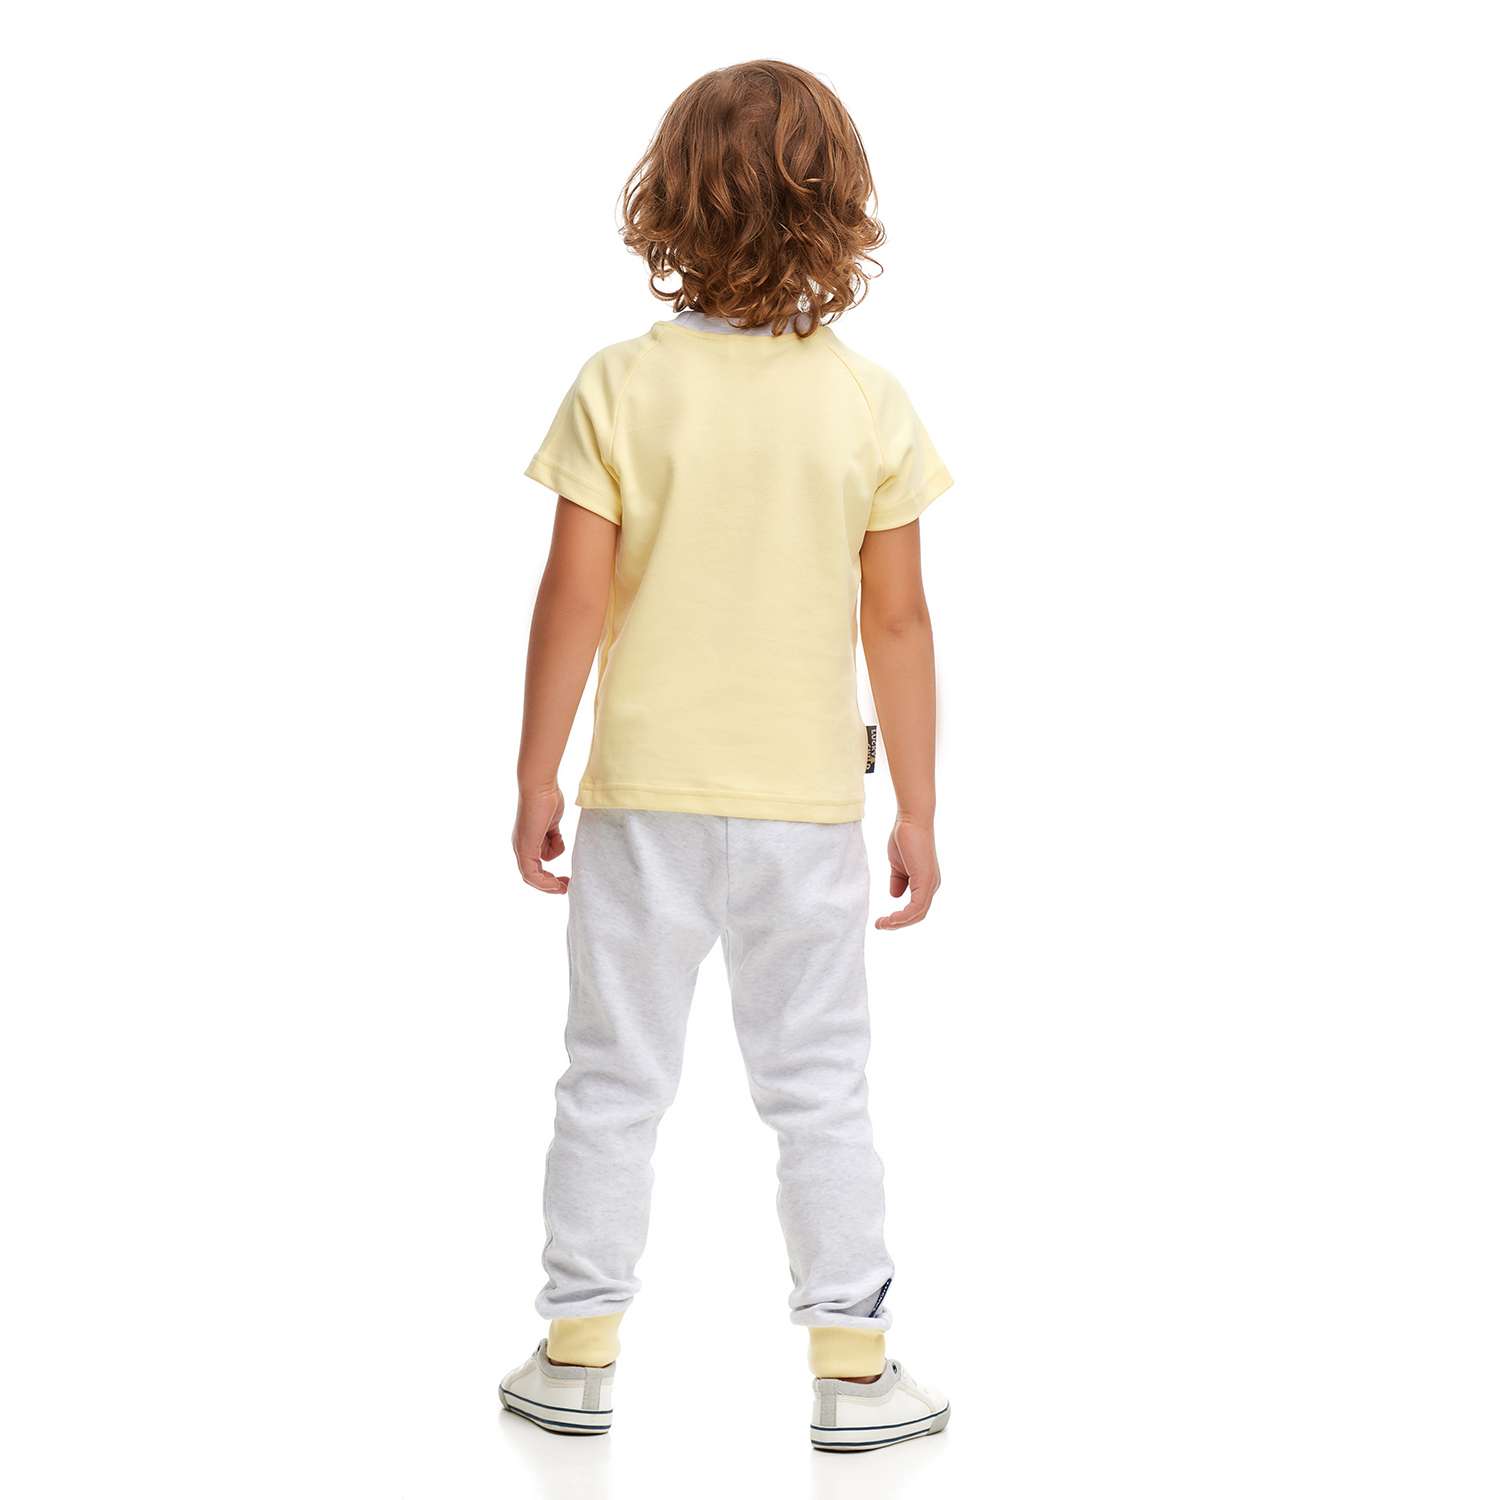 Пижама Lucky Child 70-405/7-12/желтый - фото 2